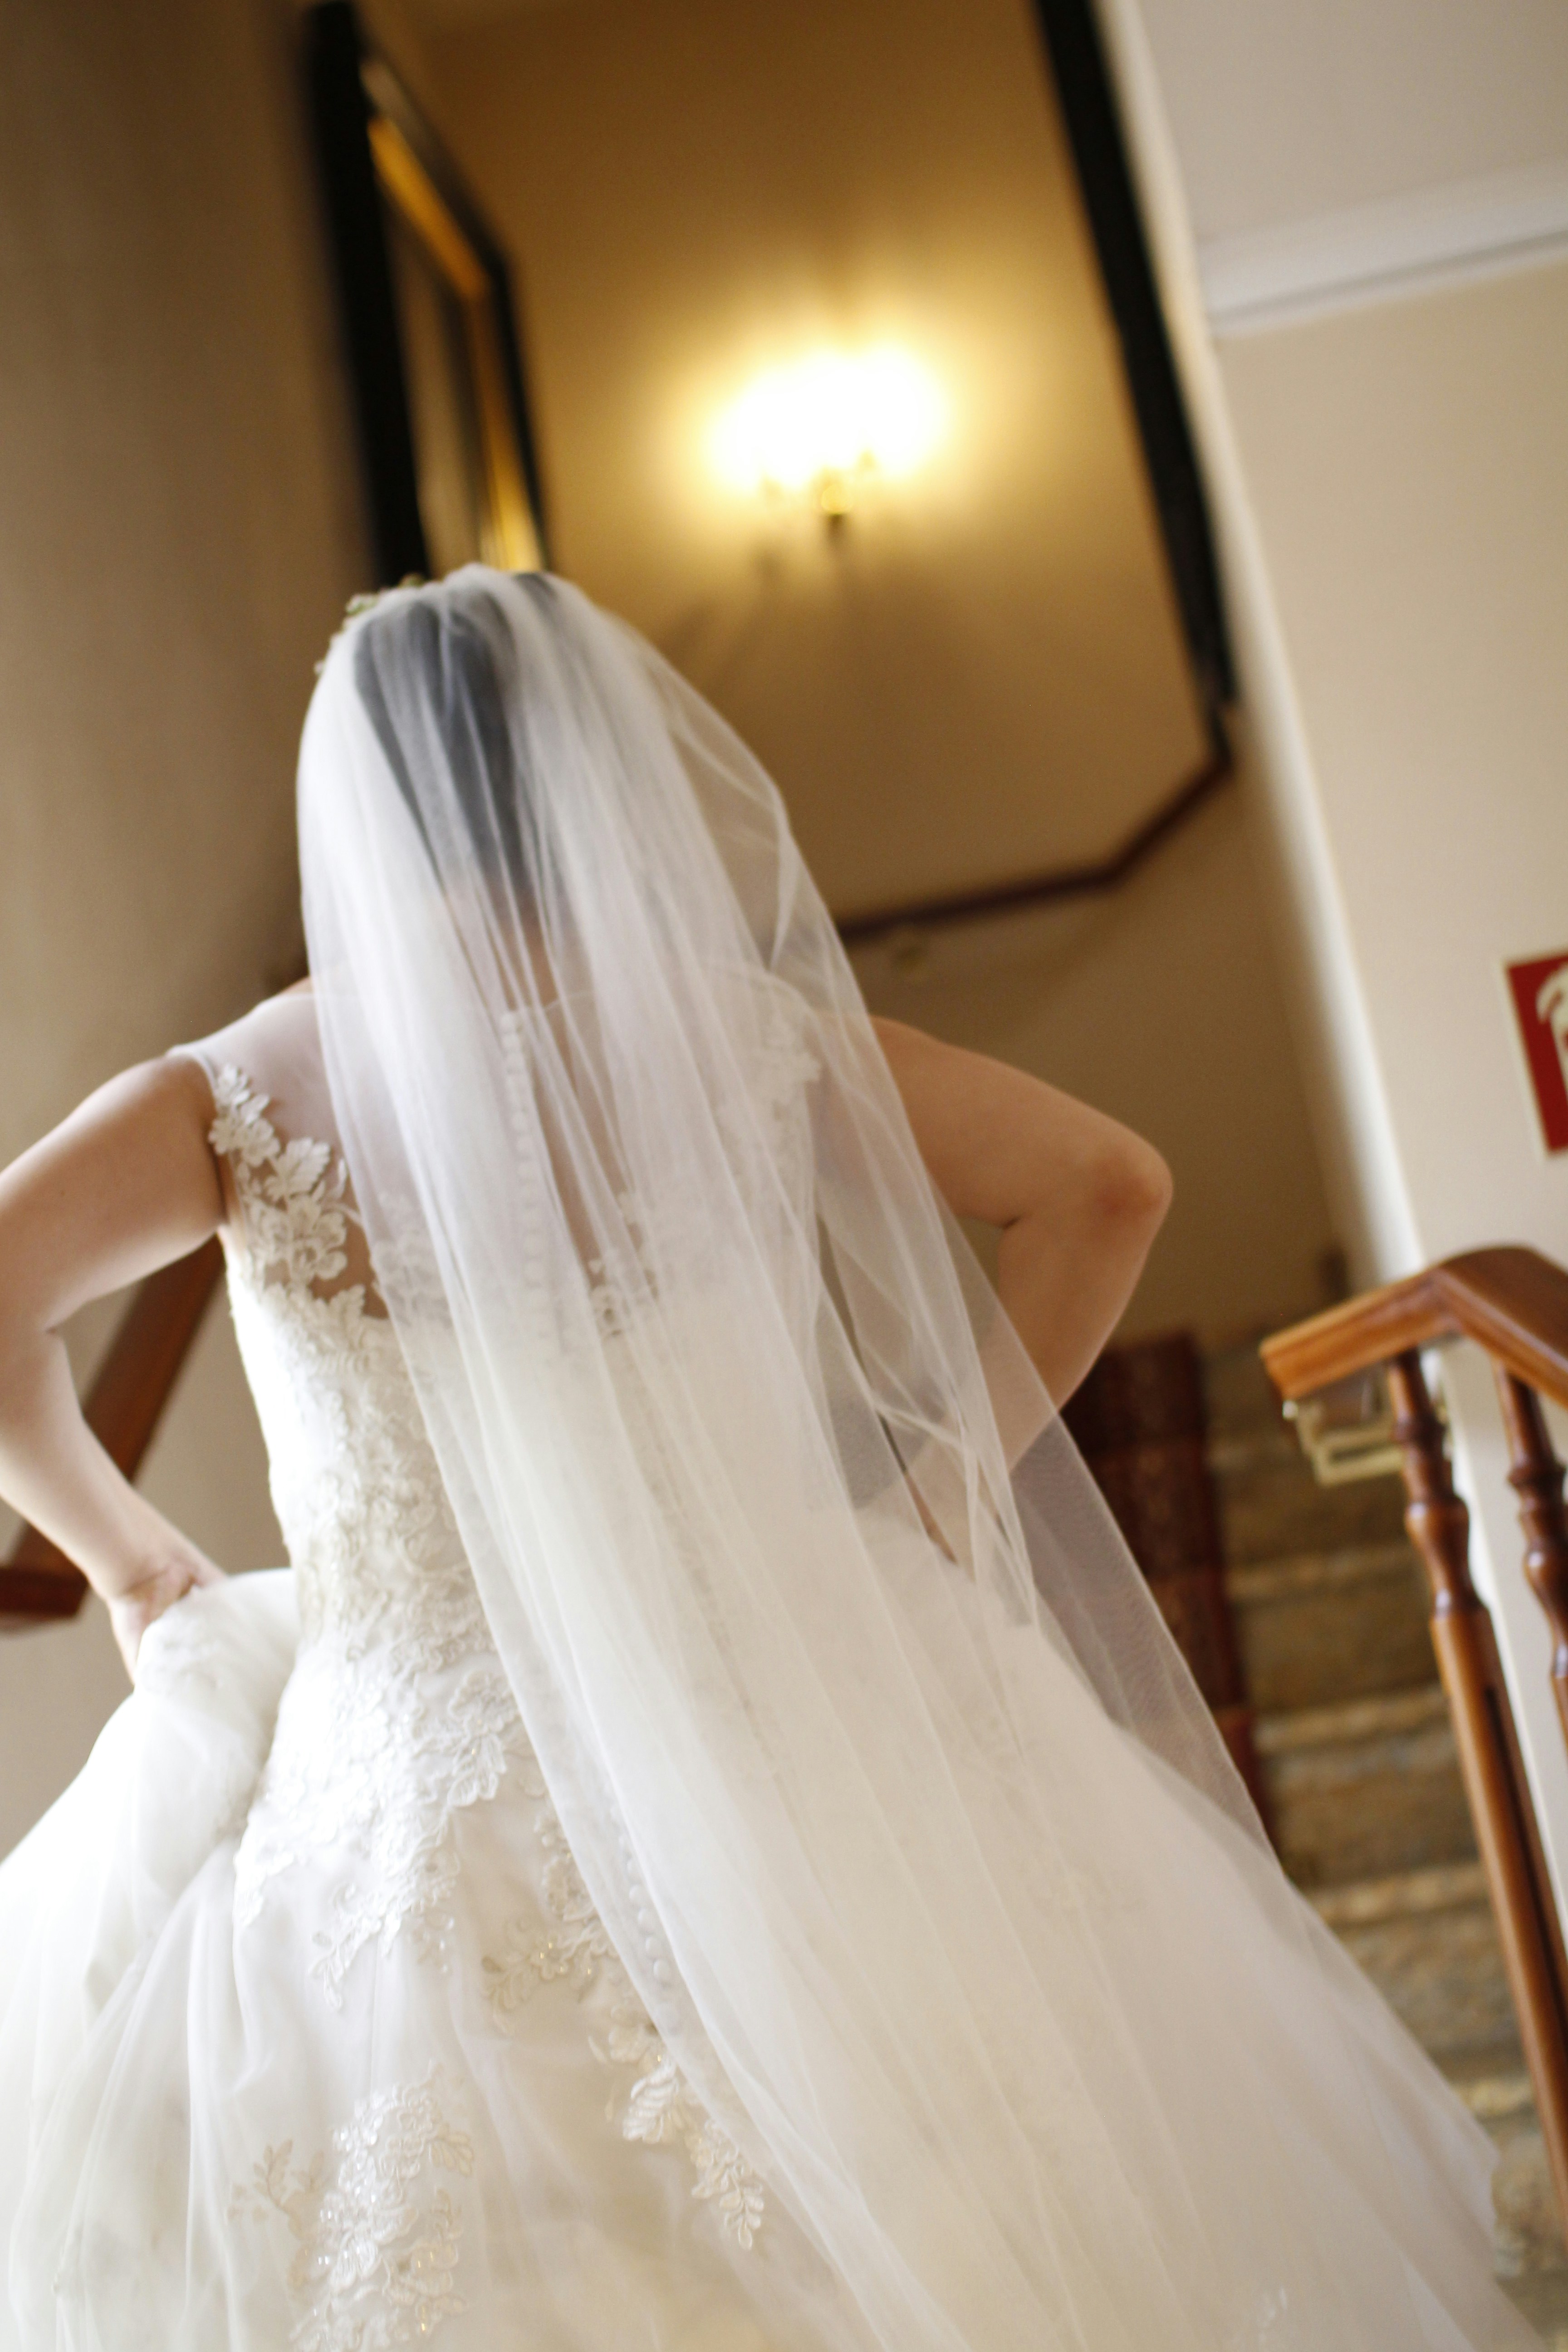 Eine Braut beim Laufen | Quelle: Unsplash